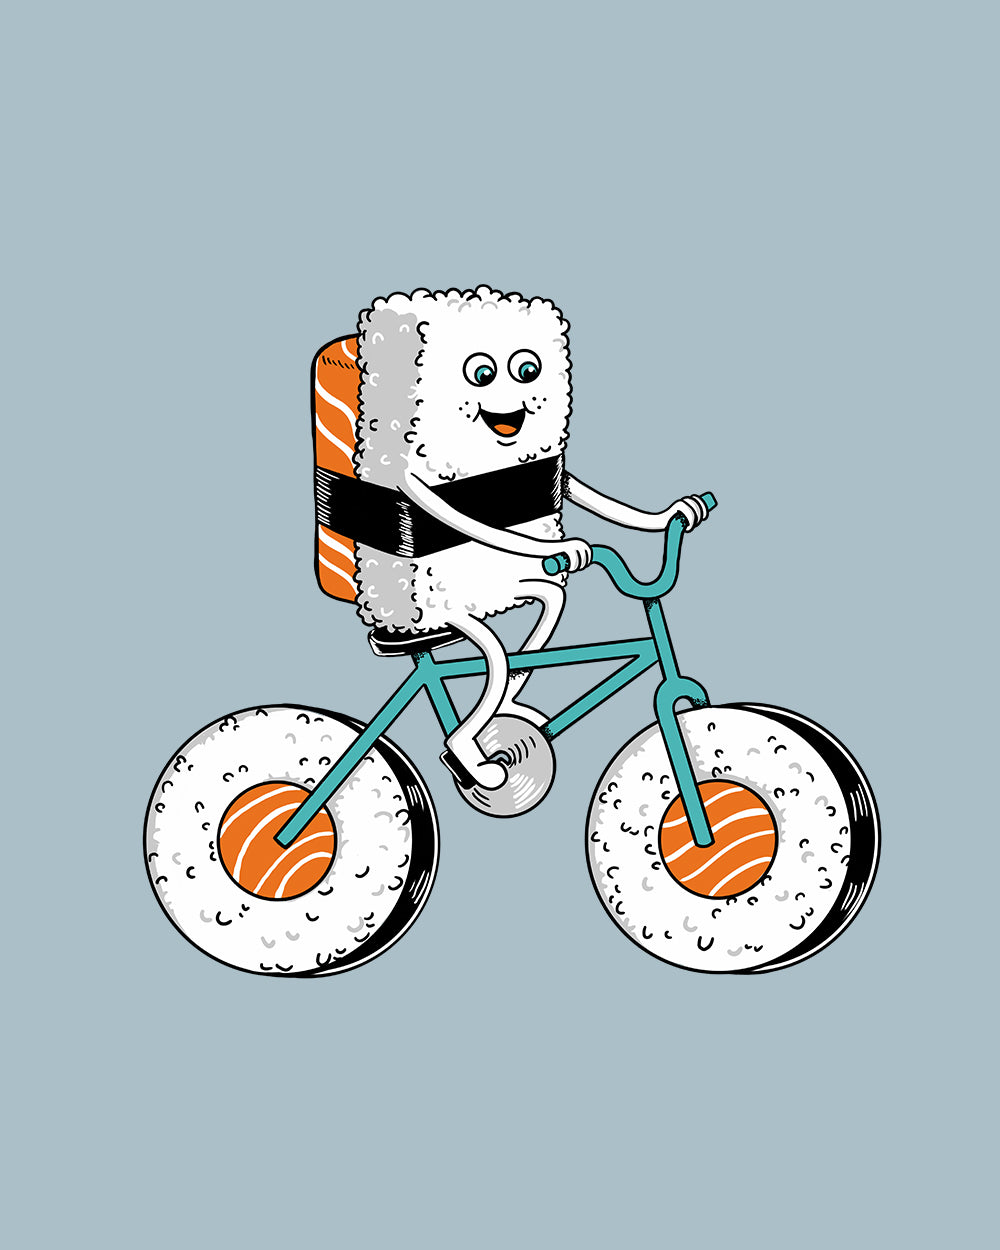 Sushi Bicycle T-Shirt Australia Online #colour_pale blue